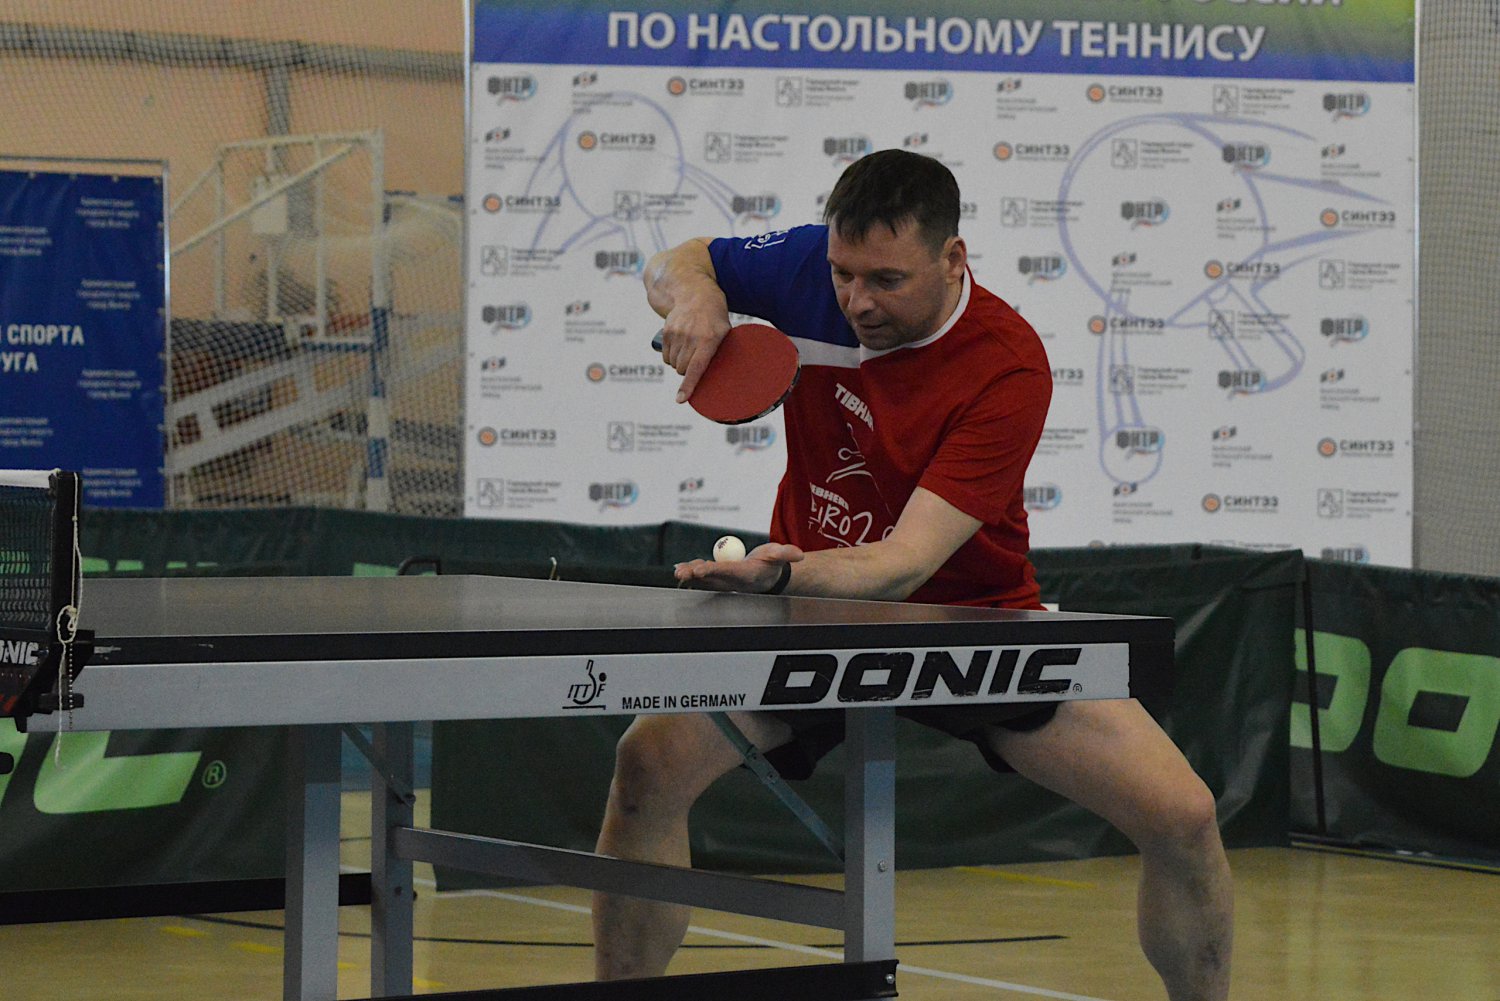 Мастер спорта Александр Давыдов приглашает в секцию настольного тенниса